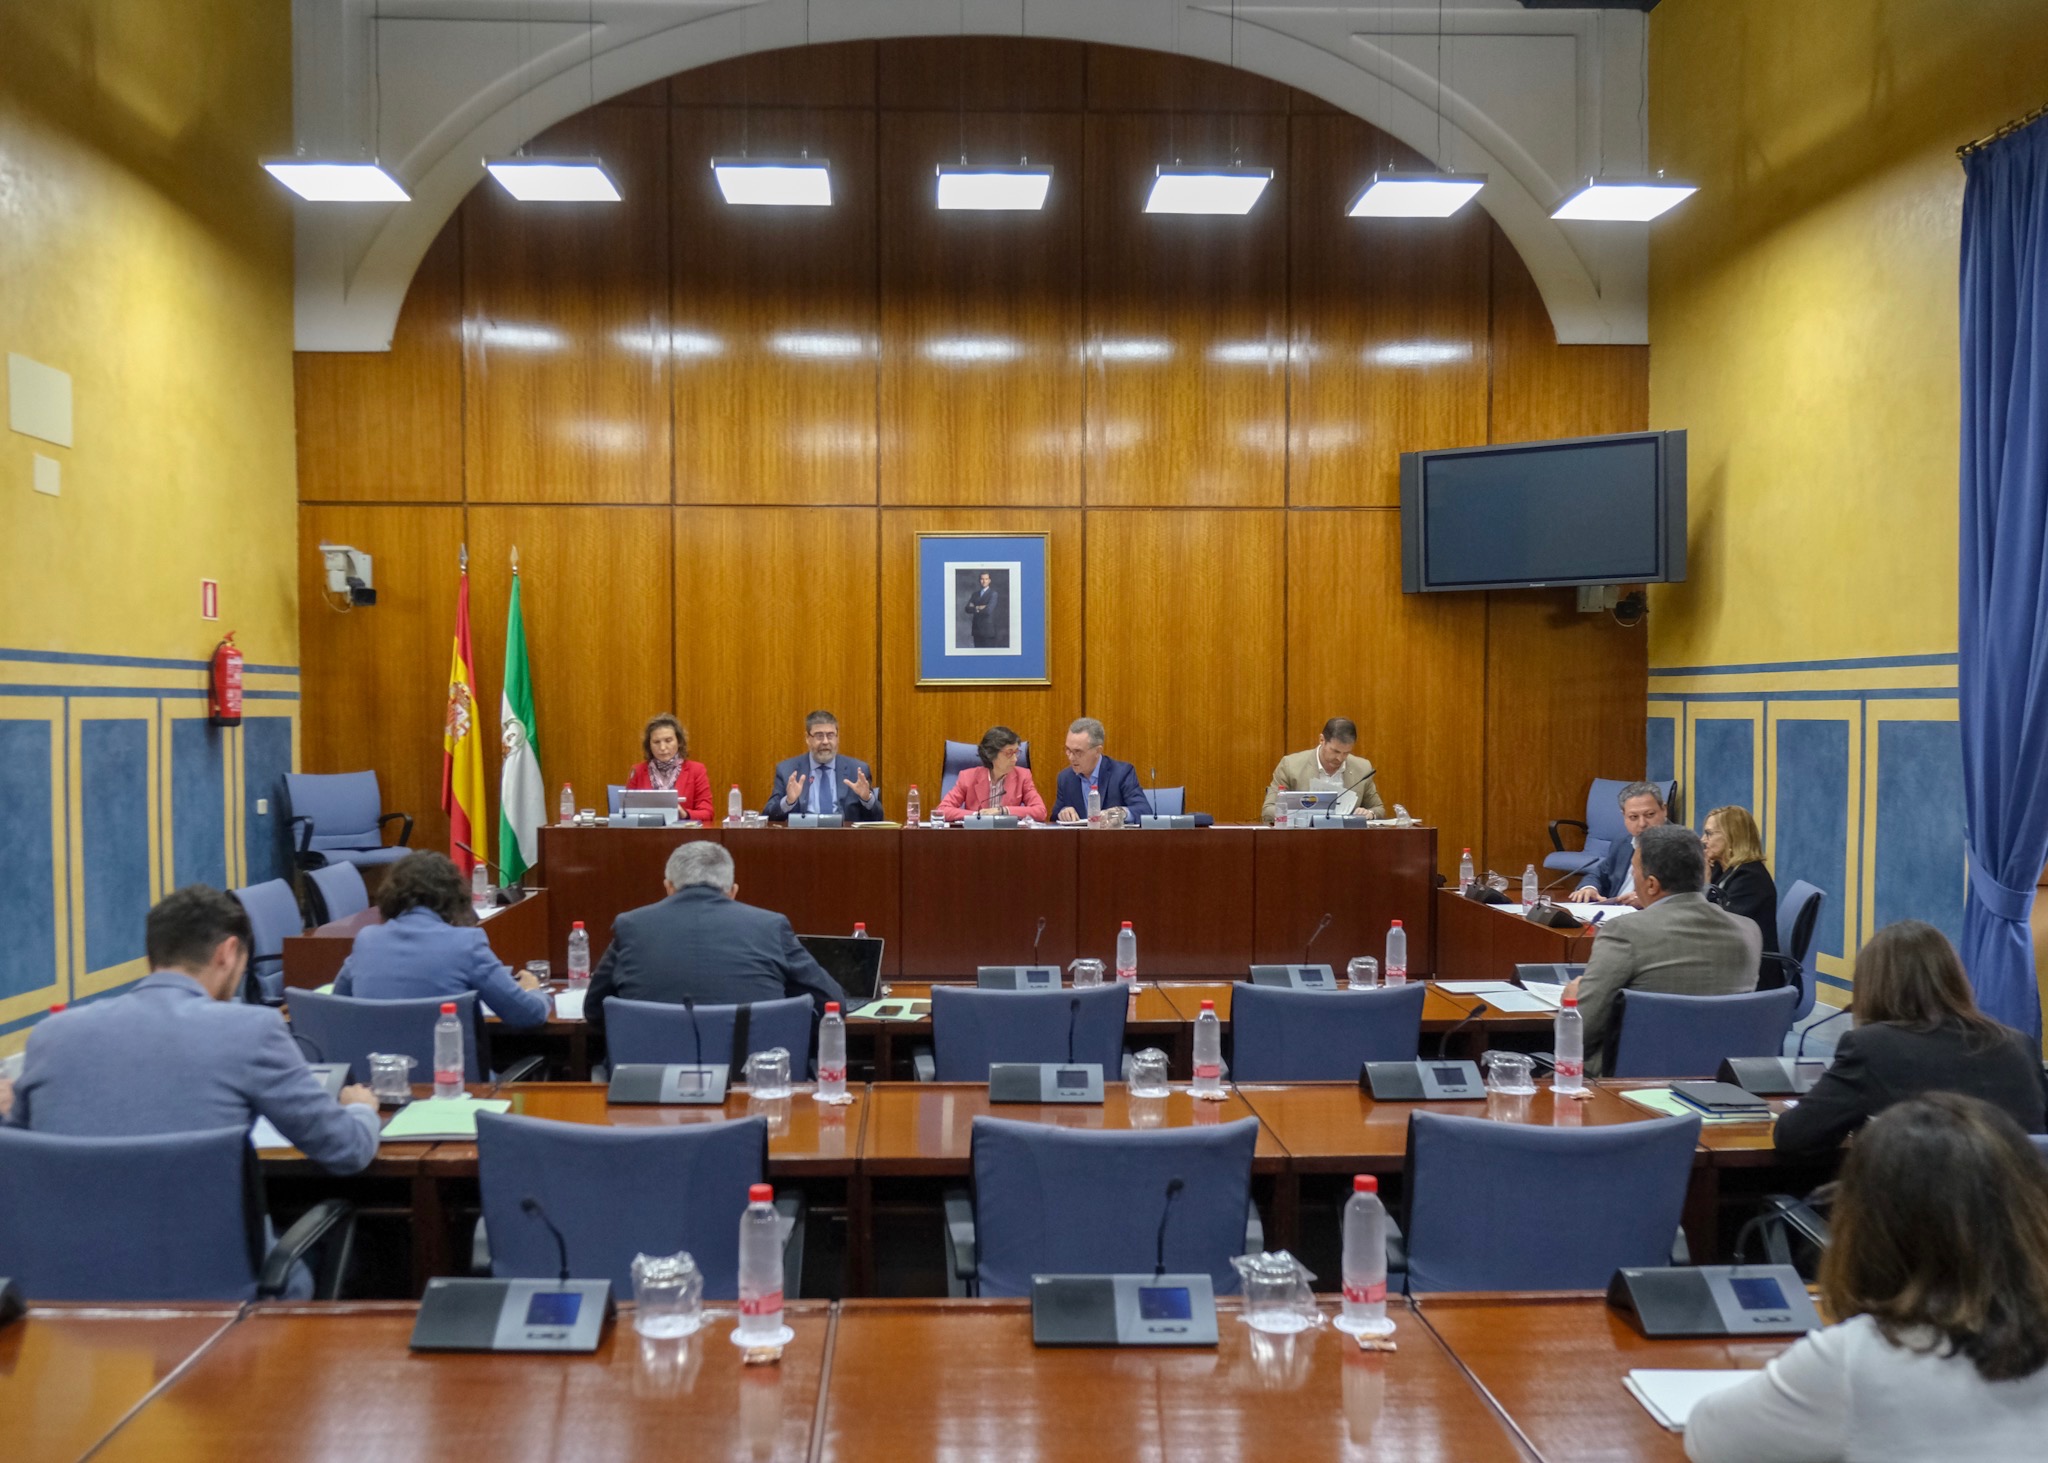  La Comisin de Hacienda asiste a la presentacin de un informe por parte del presidente de la Cmara de Cuentas, Antonio Lpez